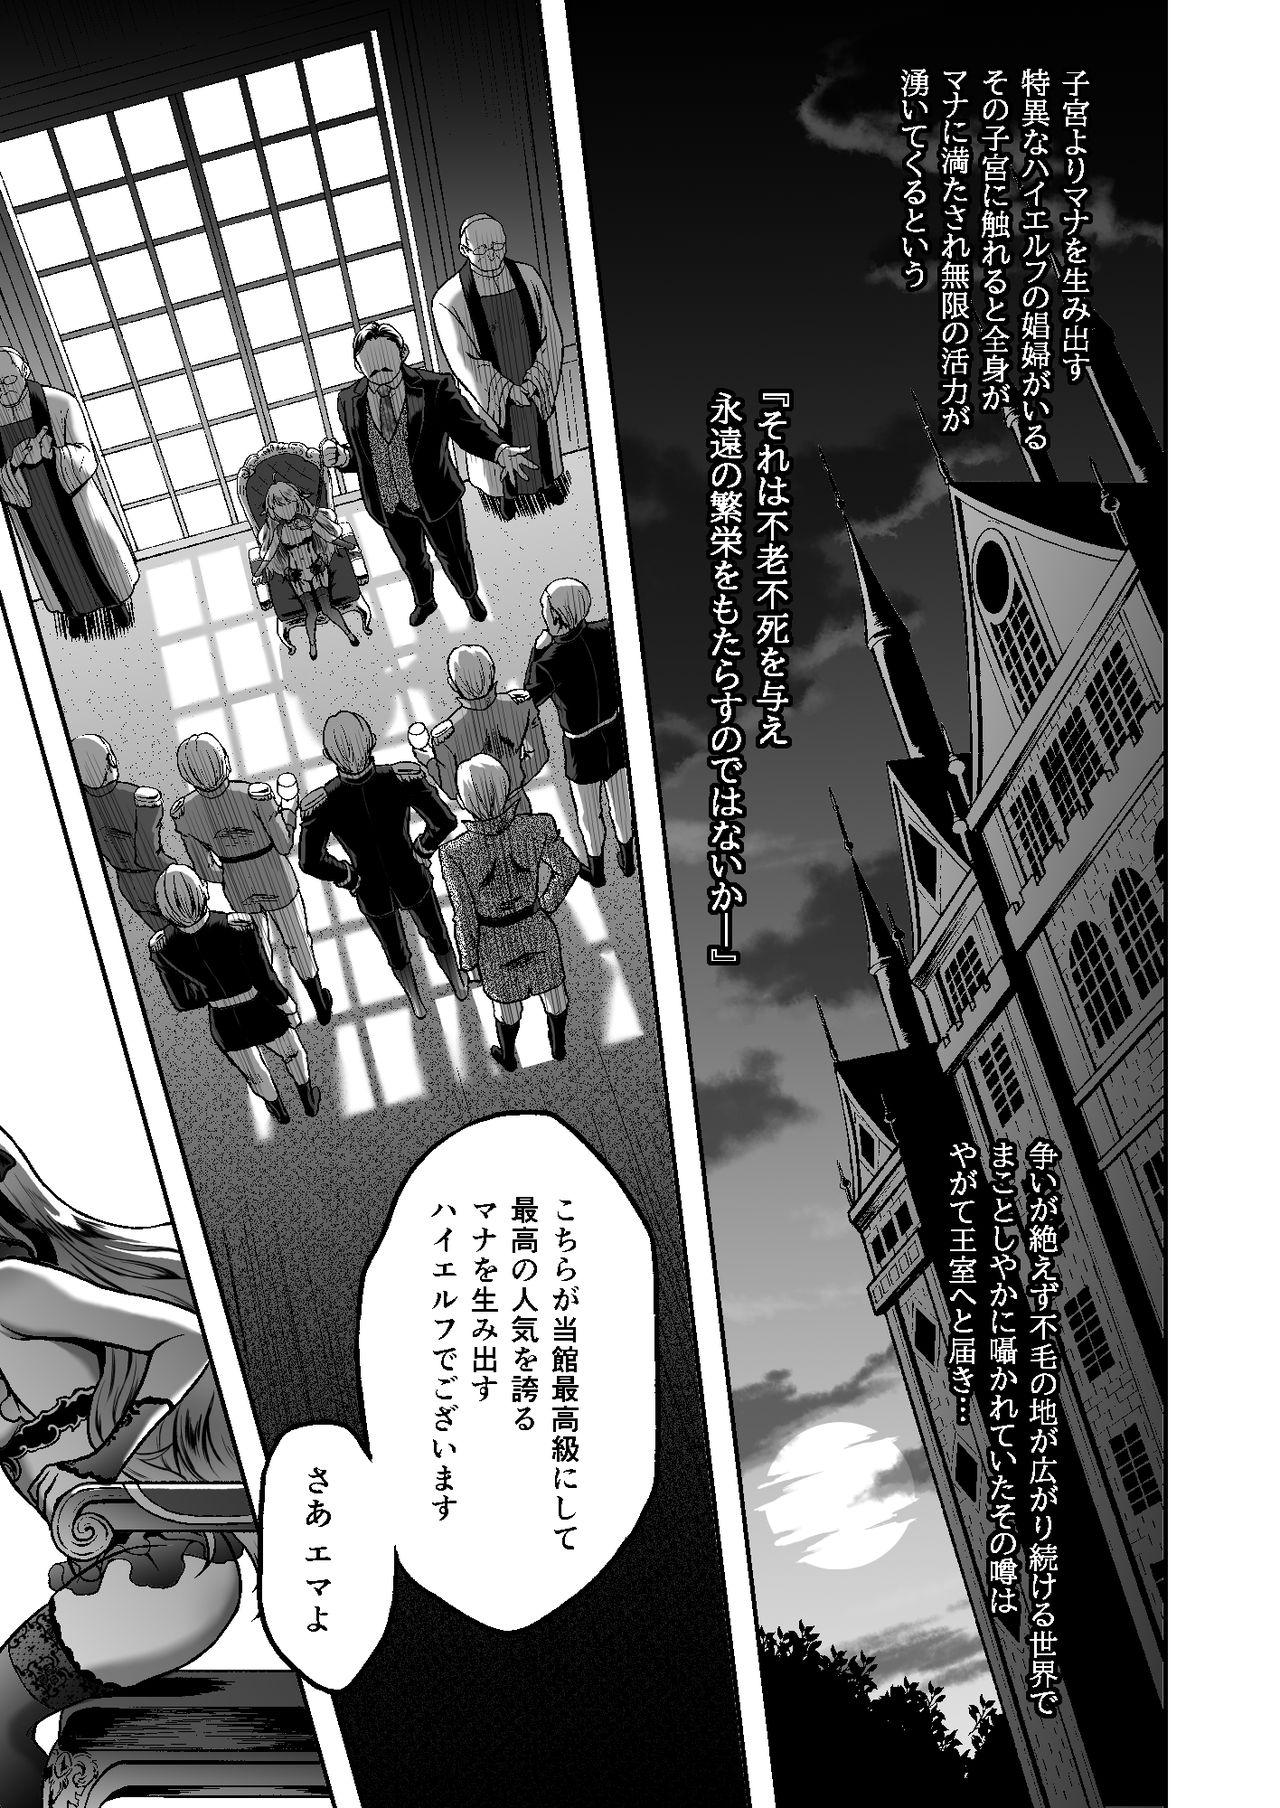 Massive Tasogare no Shou Elf 6 - The story of Emma's side - Original Stepsiblings - Page 3